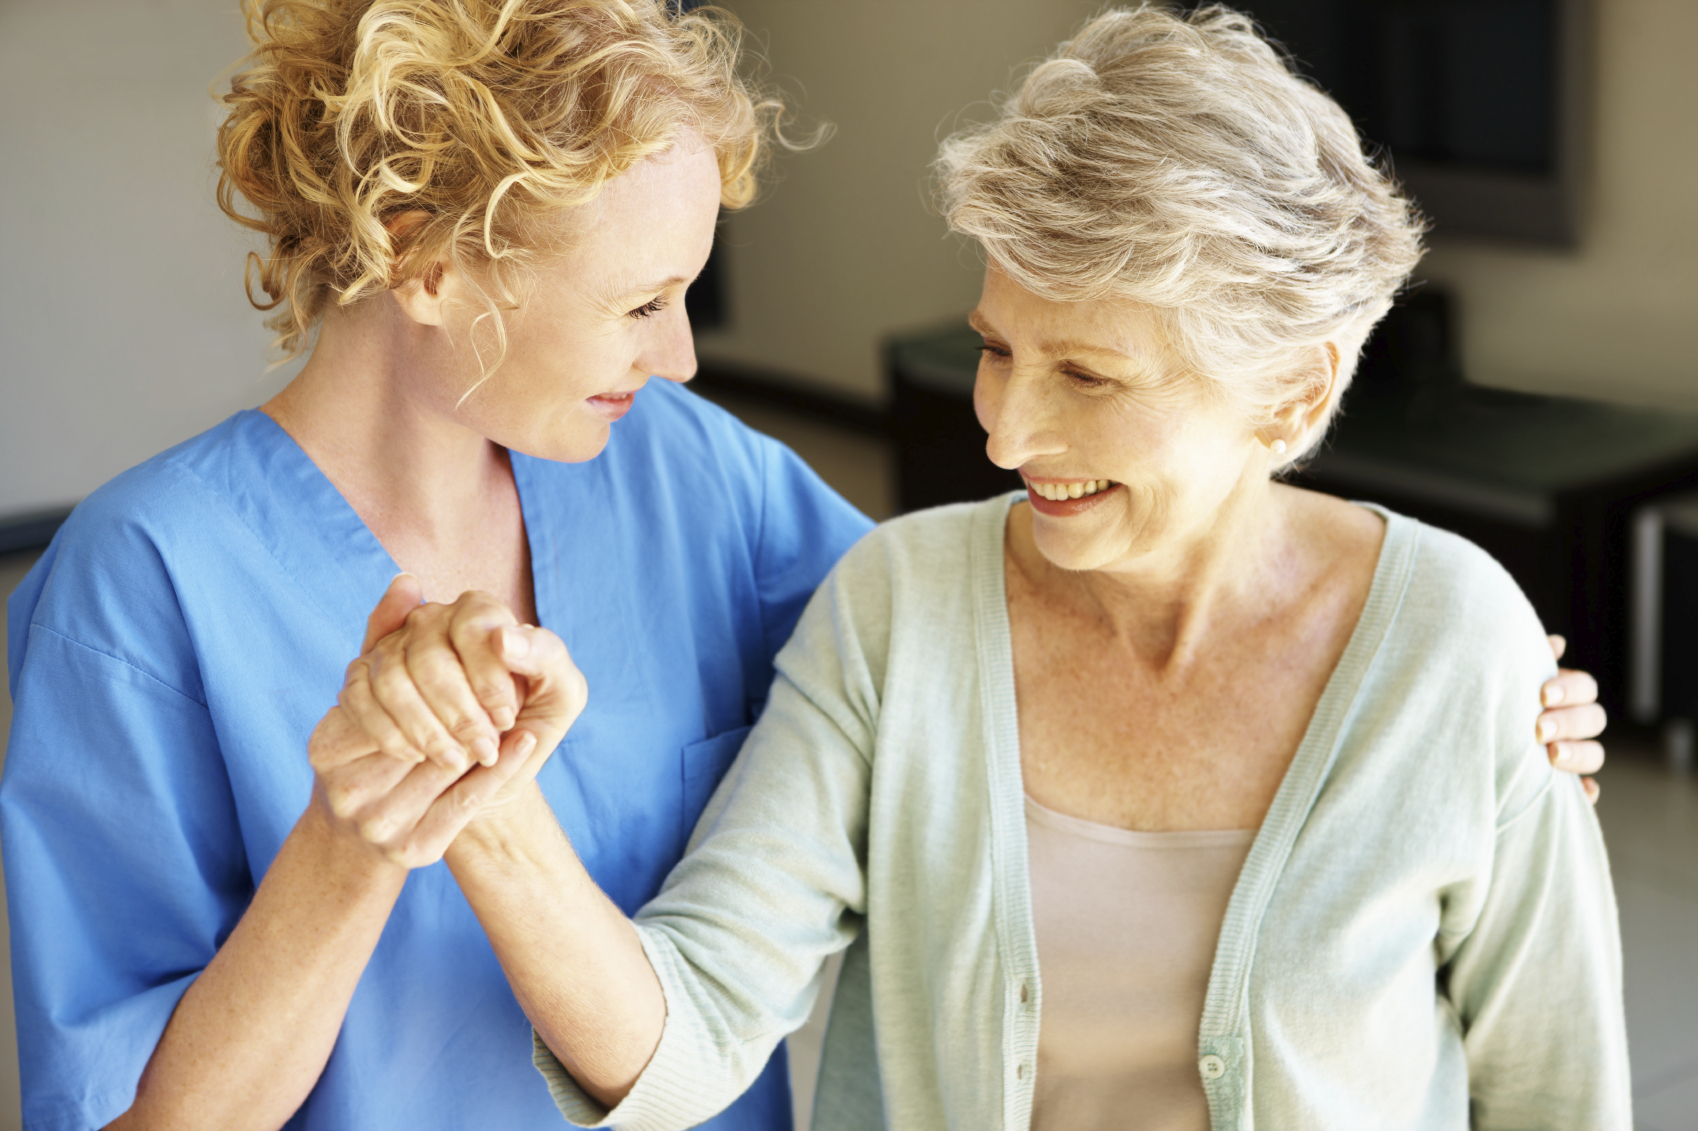 Nurse assists older female patient